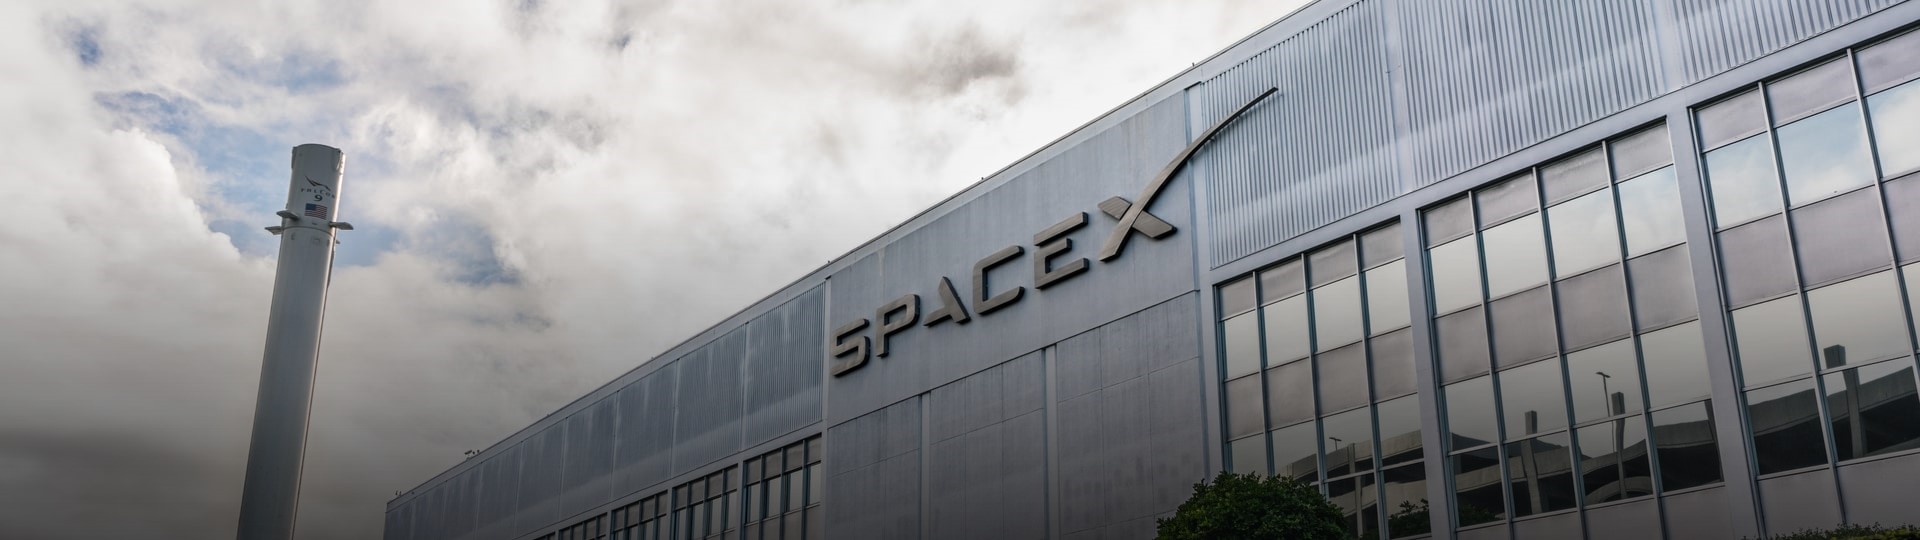 Muskova vesmírná společnost SpaceX postaví závod v Texasu